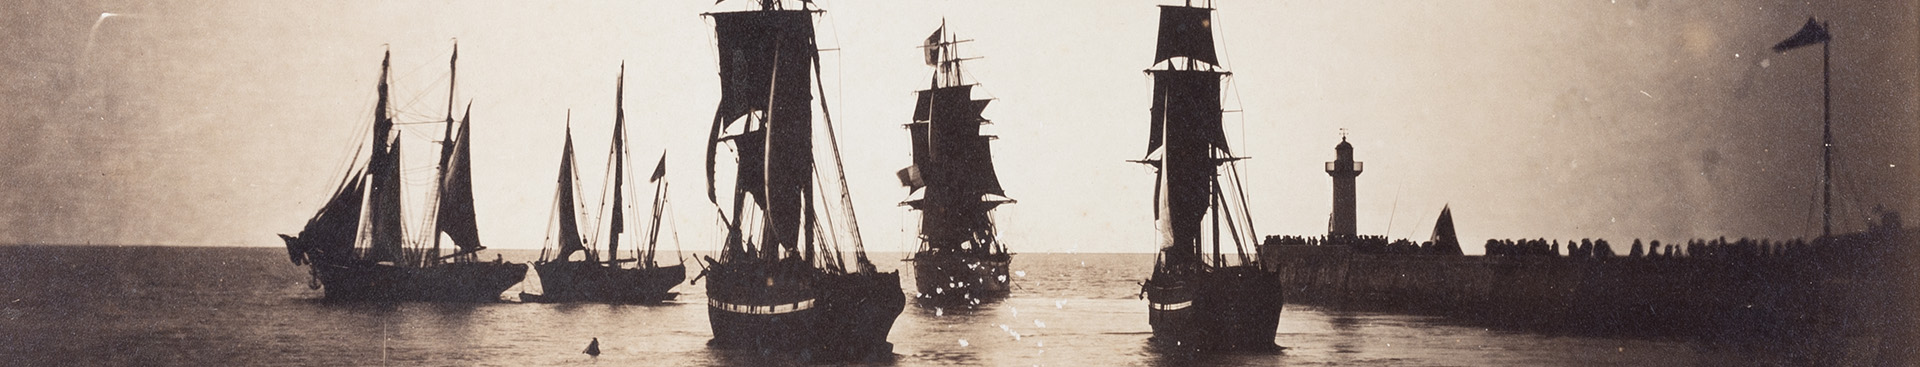 [Bateaux quittant le port du Havre], Gustave Le Gray, 1856-1857